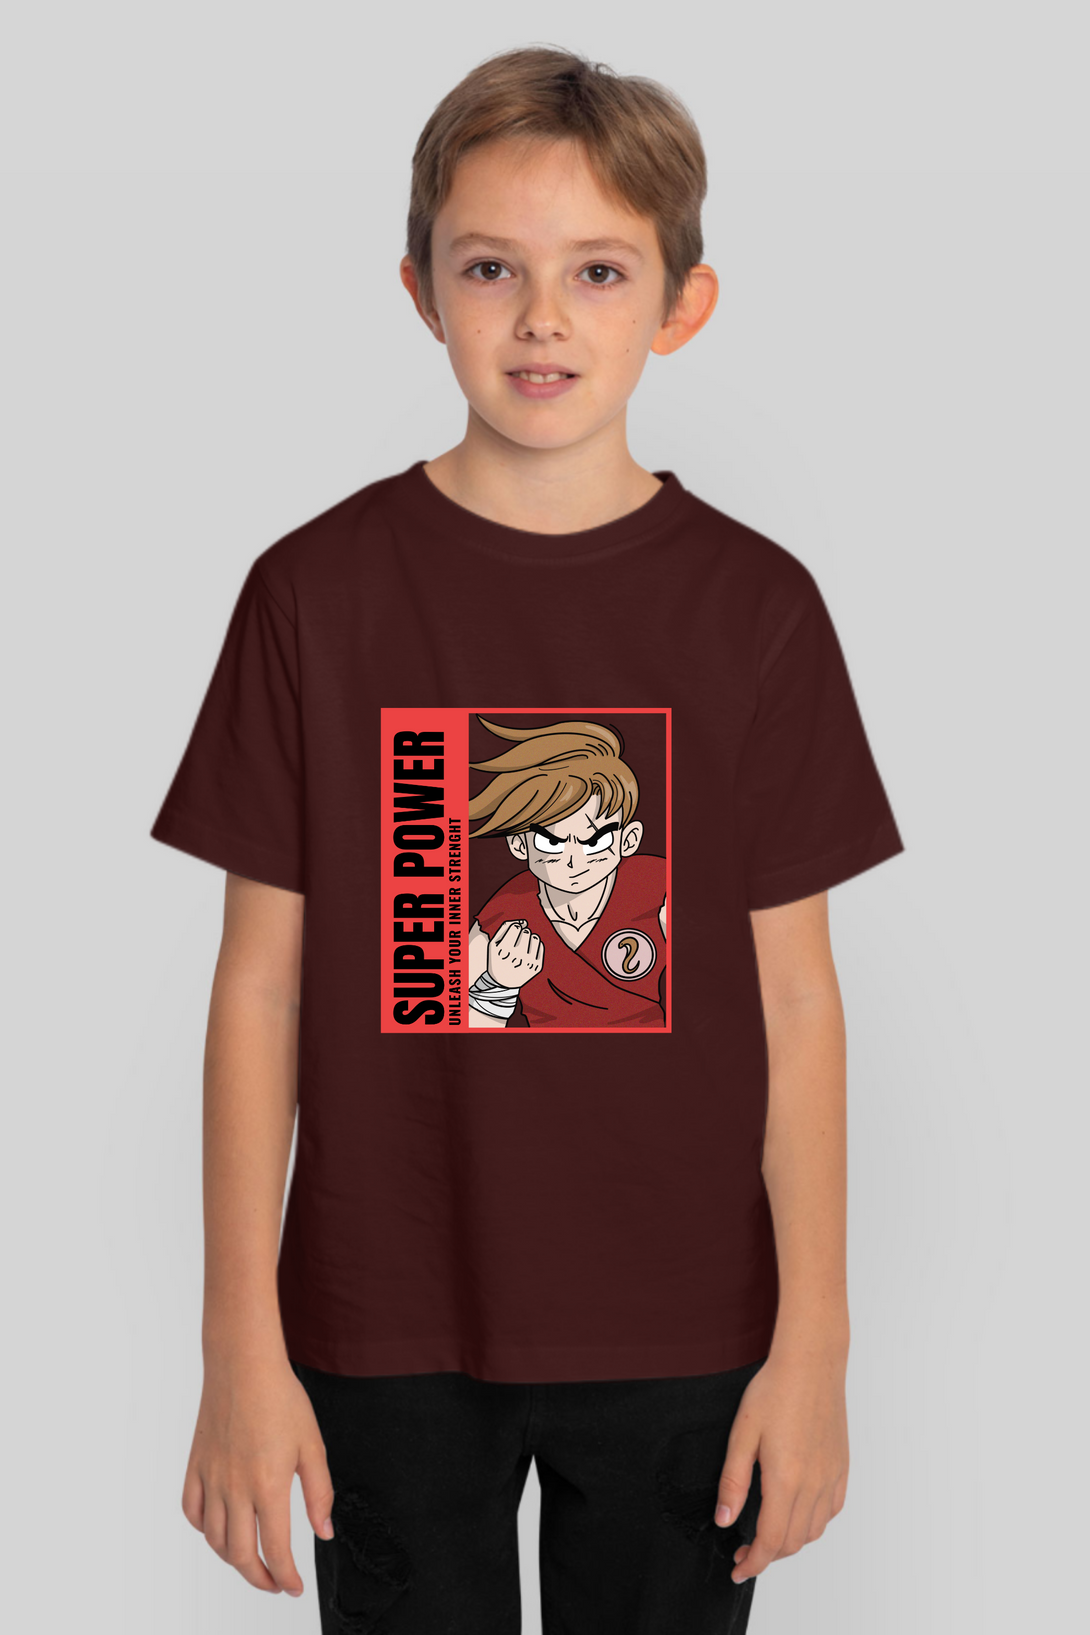 Anime Dragon Ballz Printed T-Shirt For Boy - WowWaves - 9